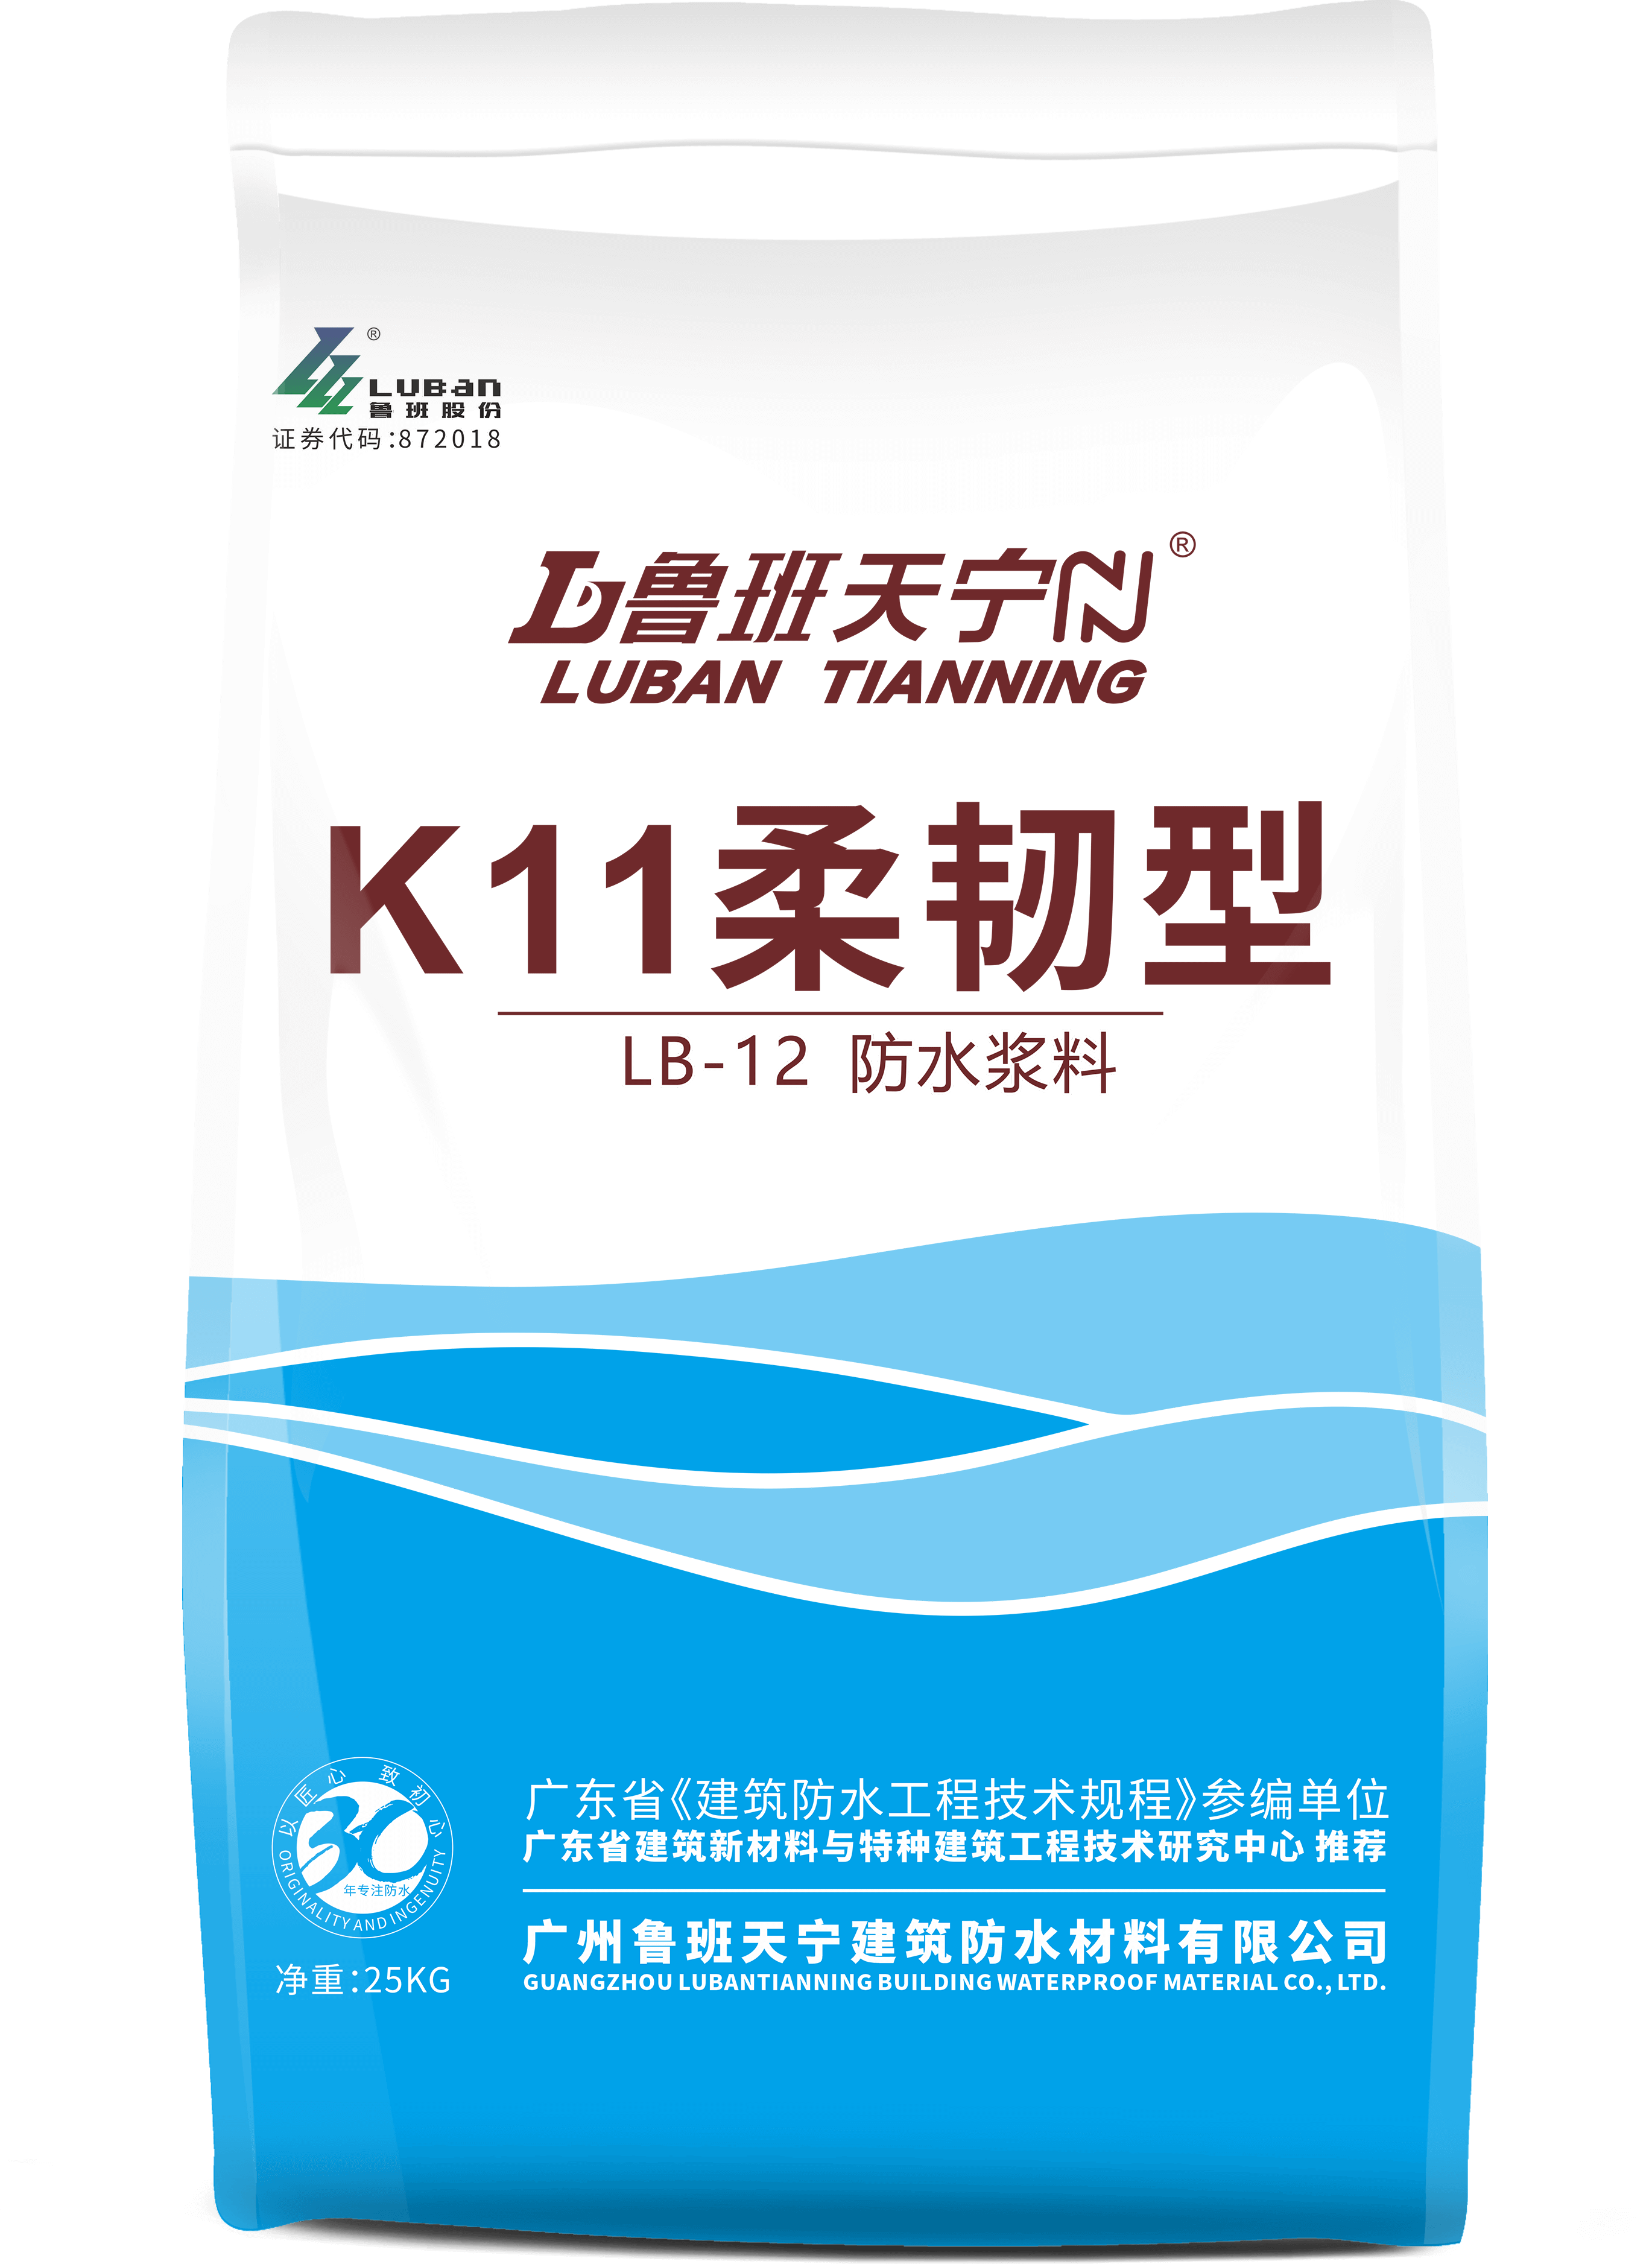 LB-12  k11柔韧型防水涂料